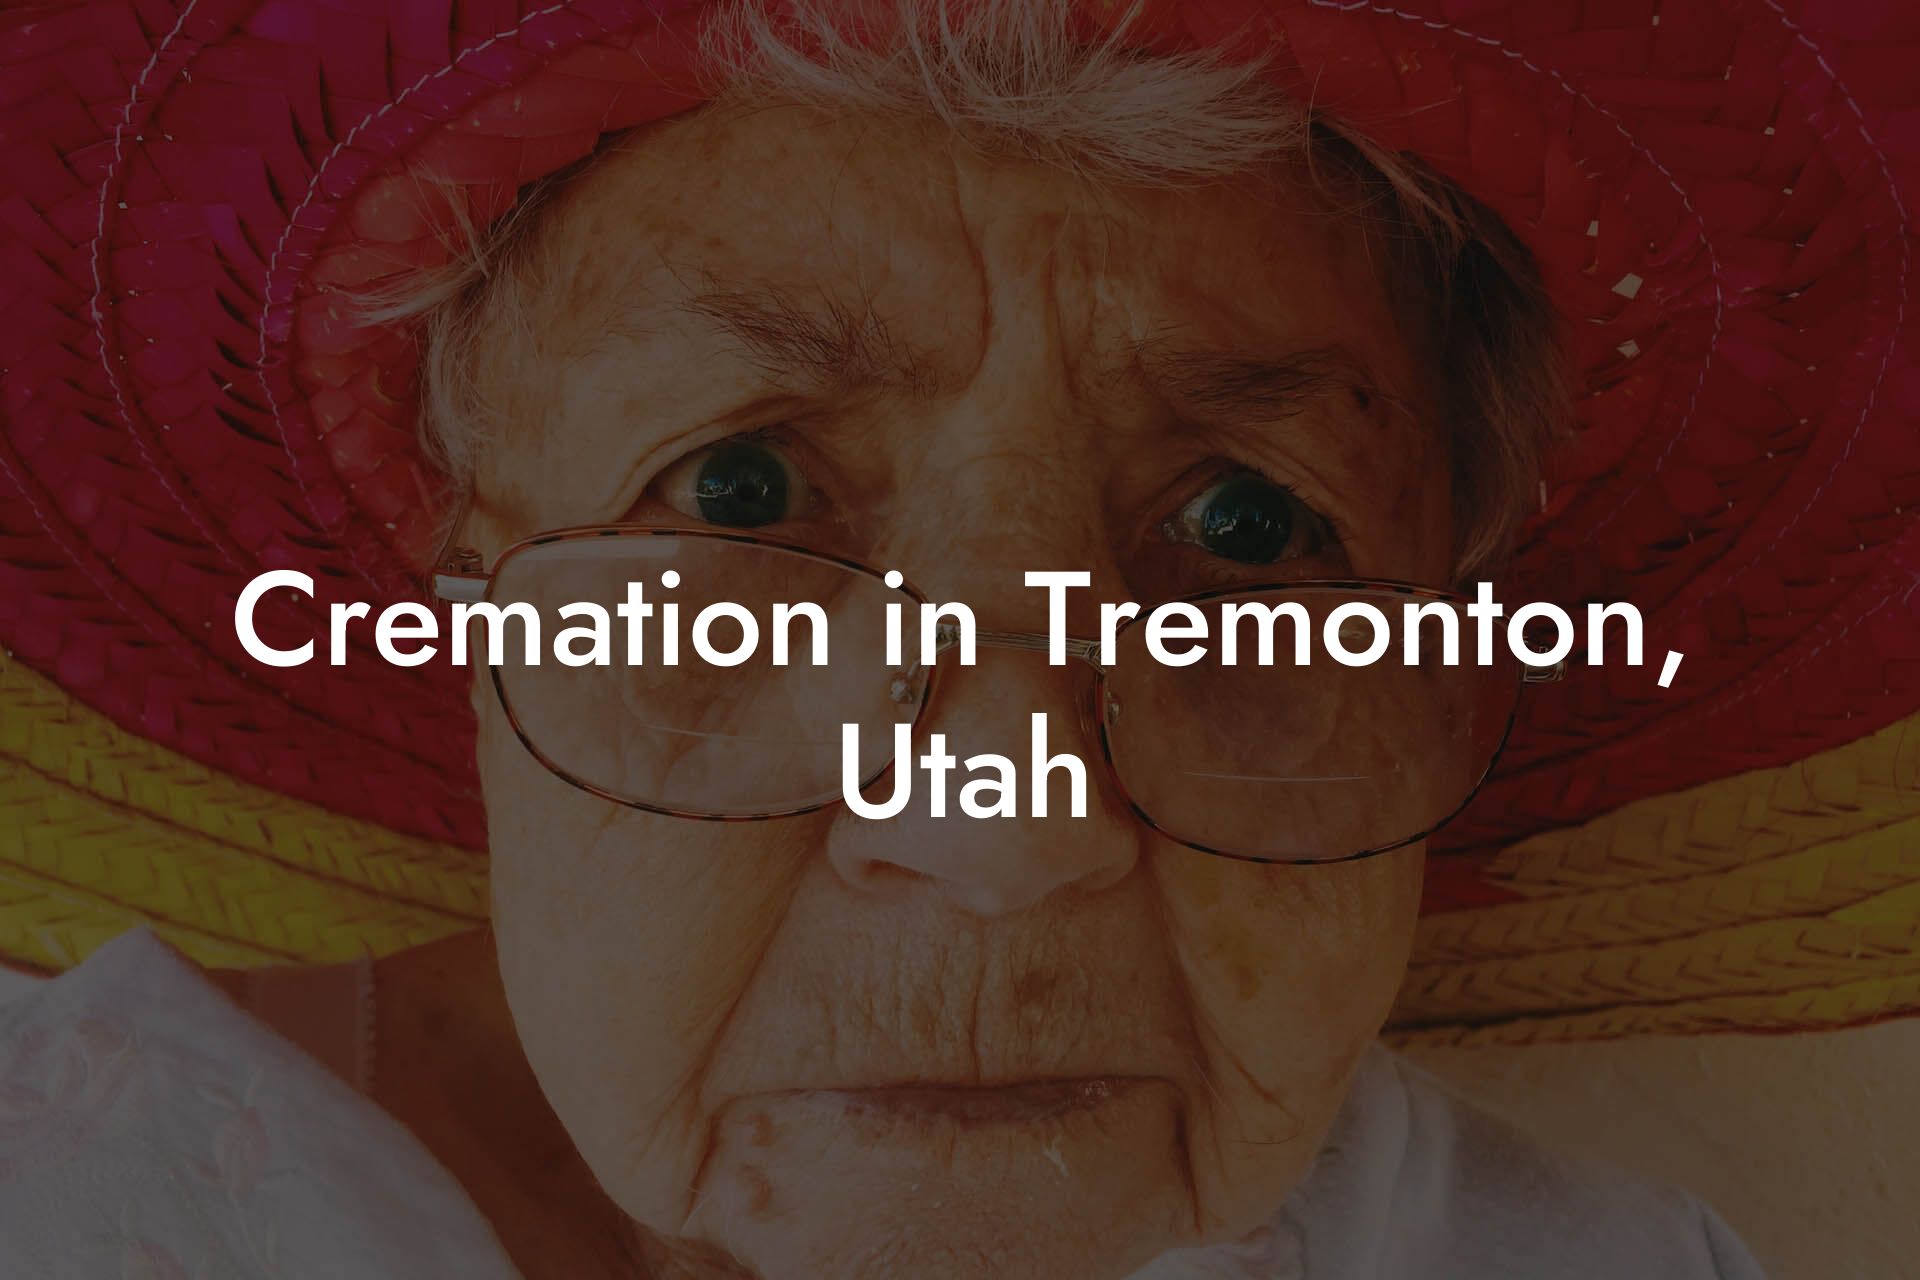 Cremation in Tremonton, Utah